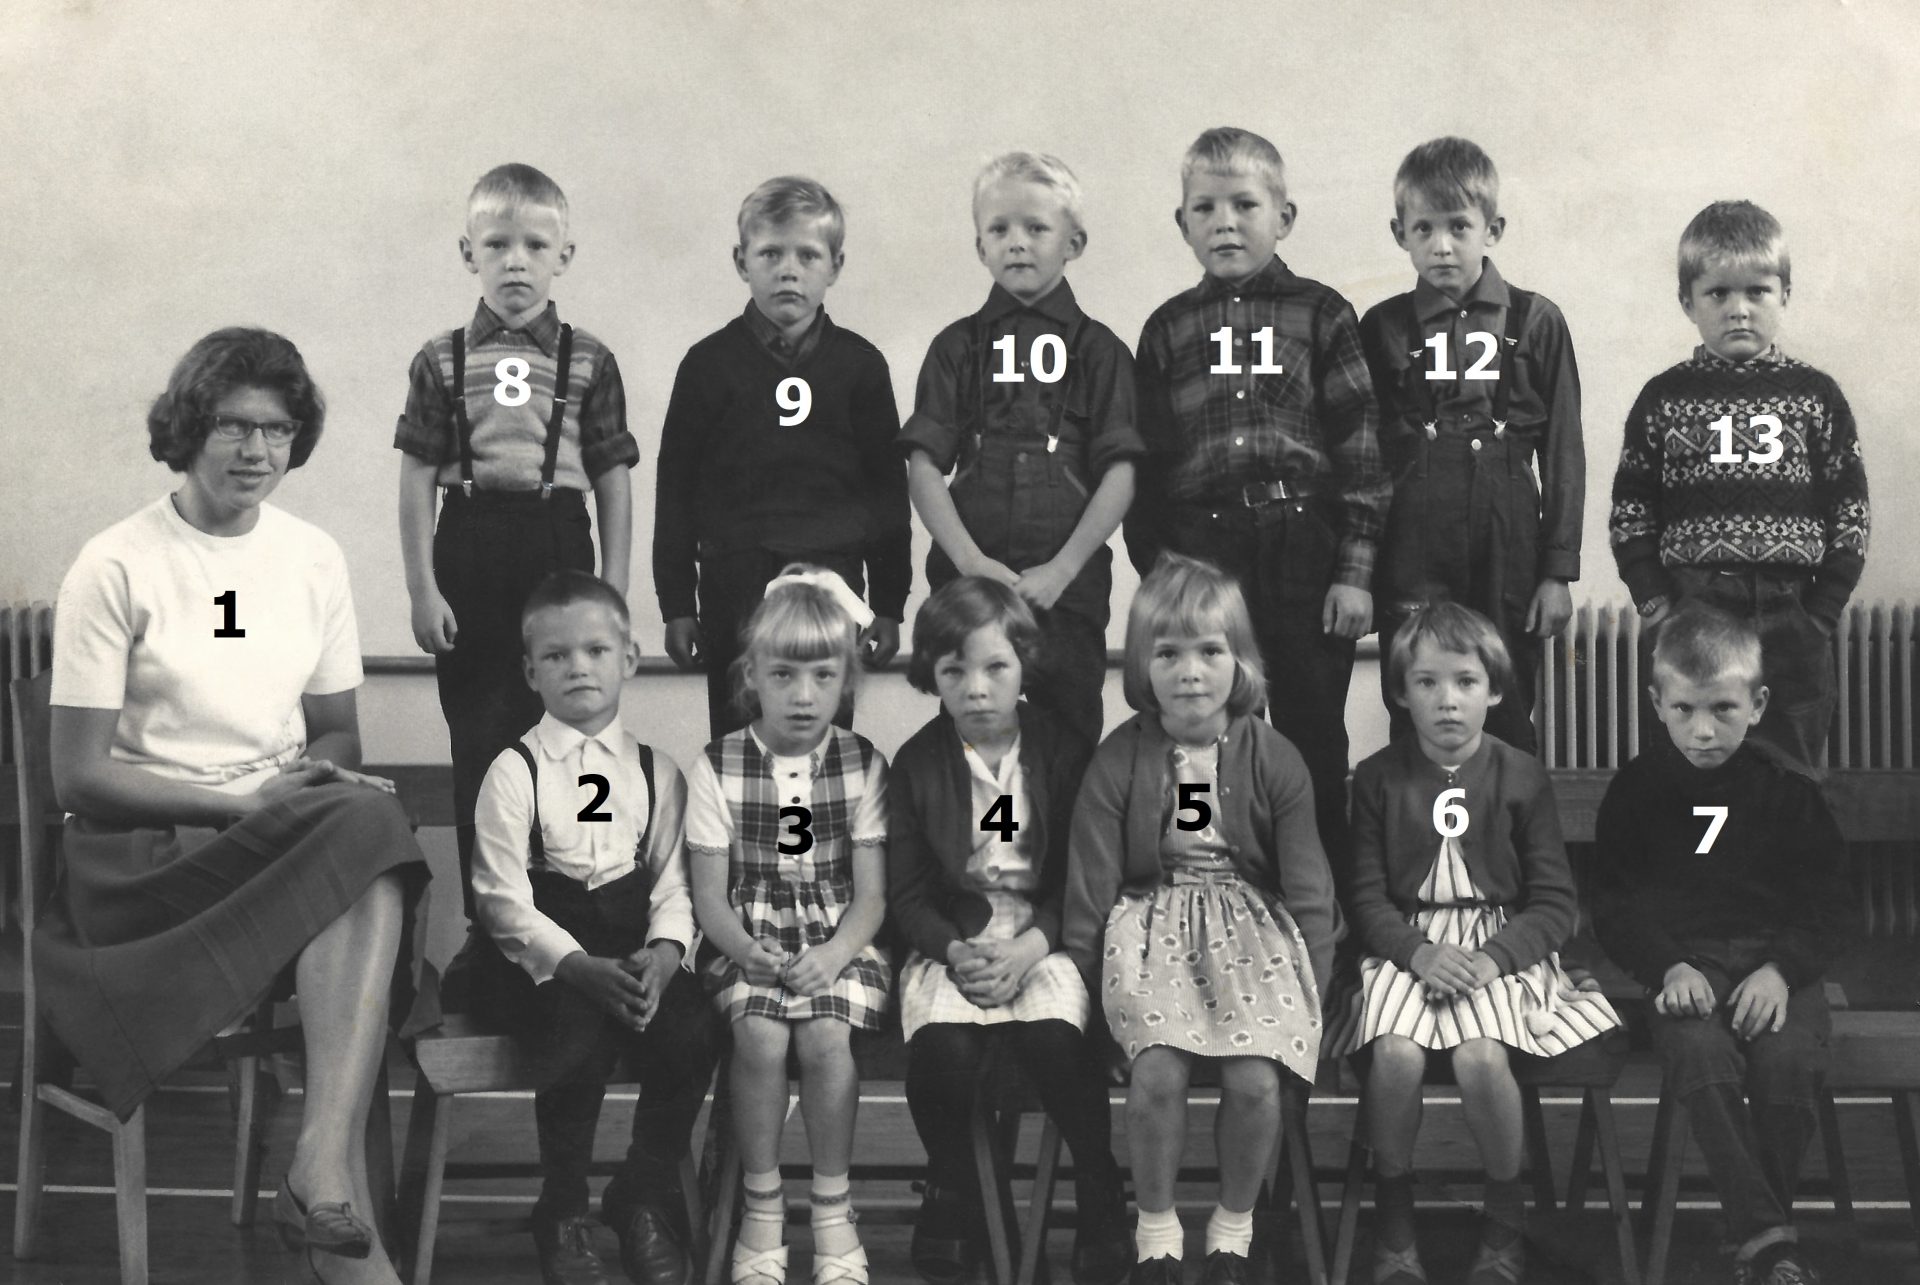 Vind Skole, 1. klasse 1965-66. Klik på billedet for at se det i større format.